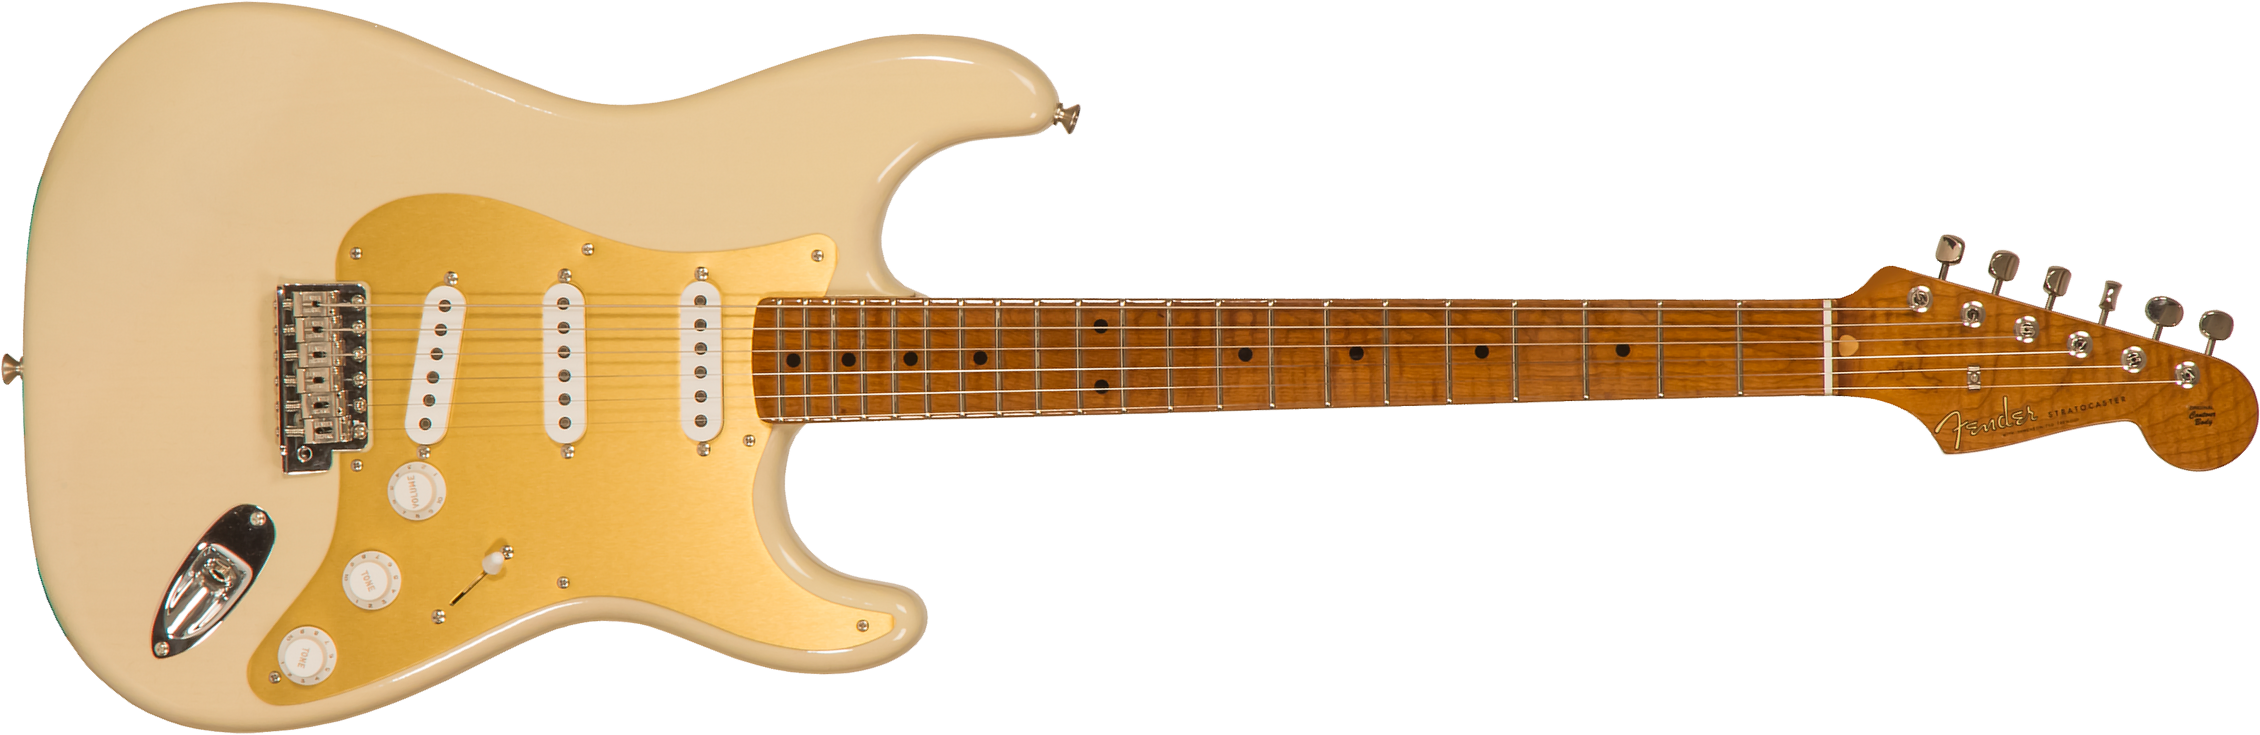 Fender Custom Shop Strat 1957 3s Trem Mn #r116646 - Lush Closet Classic Vintage Blonde - Guitare Électrique Forme Str - Main picture